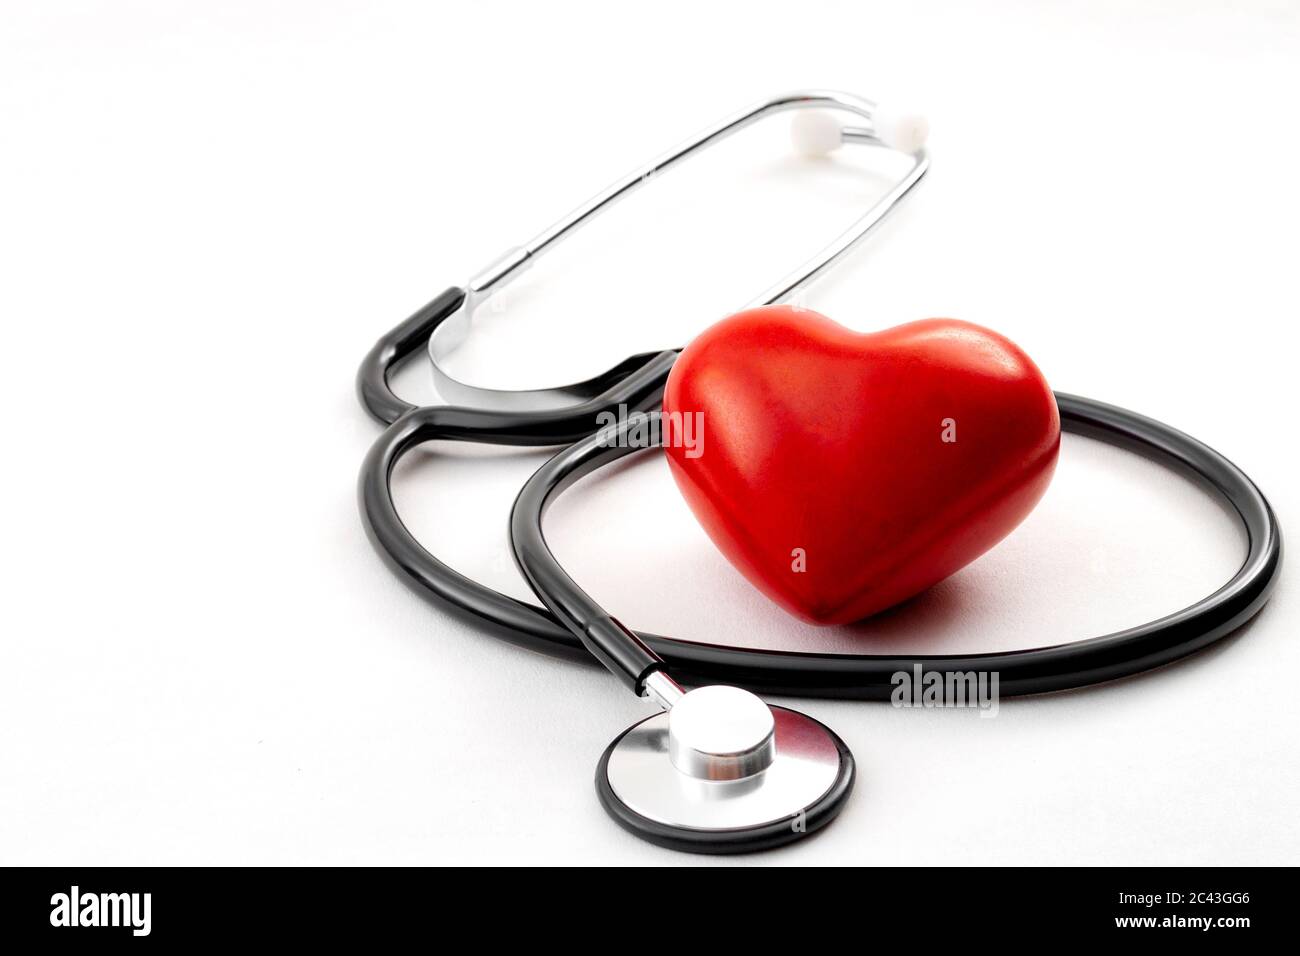 Jährliche Gesundheits-Check-up, Krankheitsdiagnose Medizin, Gesundheits-und Kardiologie Konzept mit einem roten Herzen und ein Stethoskop isoliert auf einem Krankenhaus weiß Stockfoto